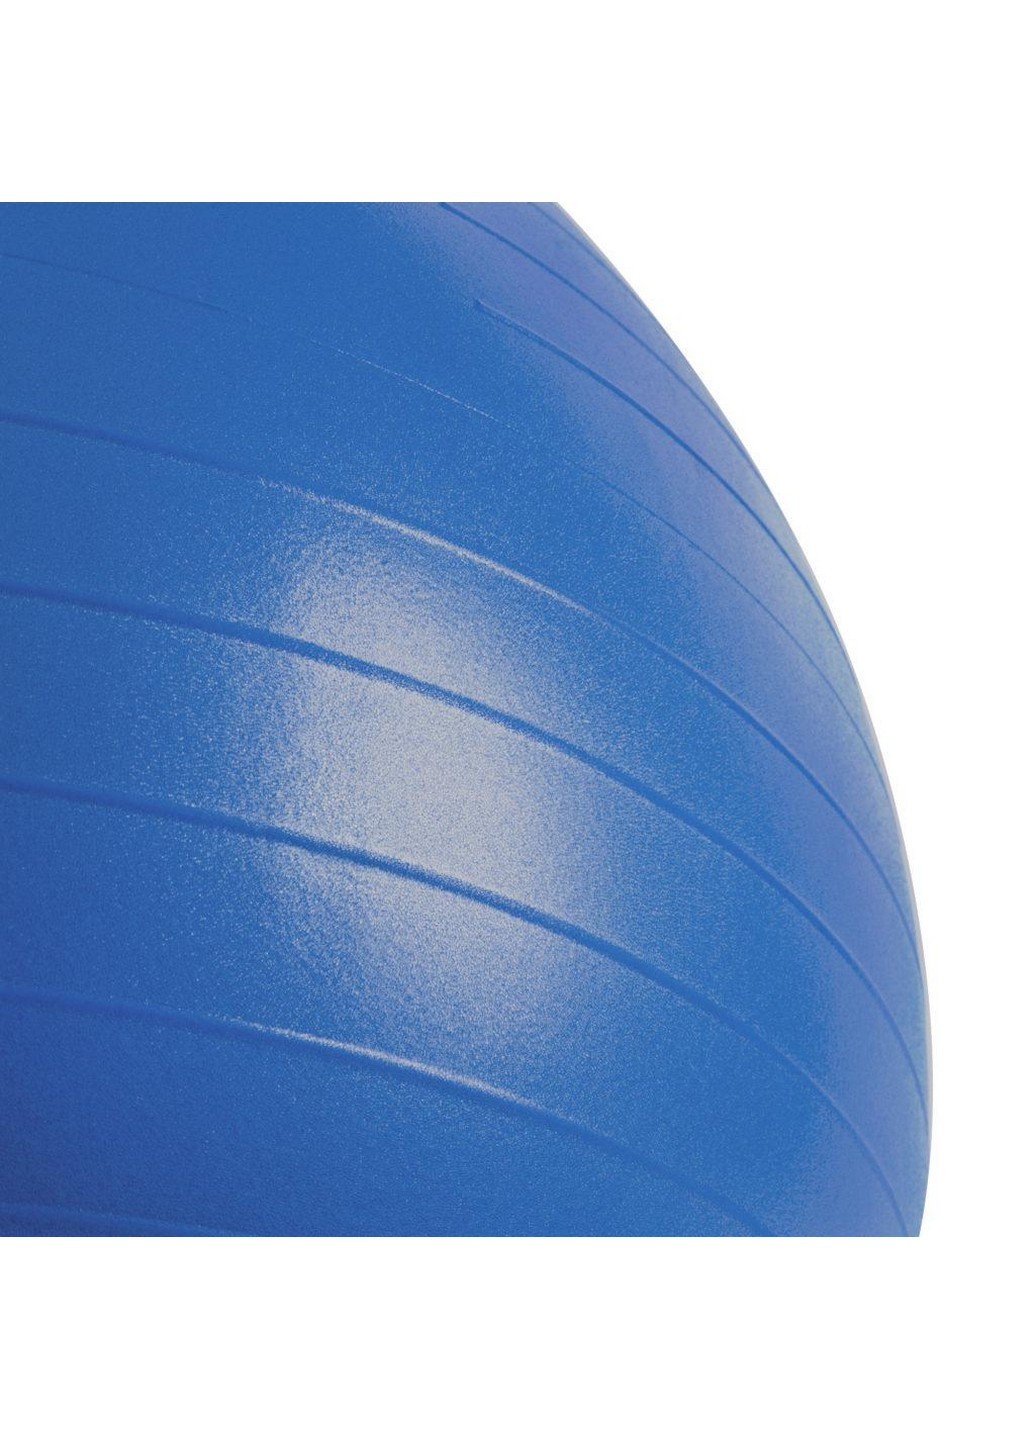 Гімнастичний м'яч для спорту з насосом Spokey (255405021)